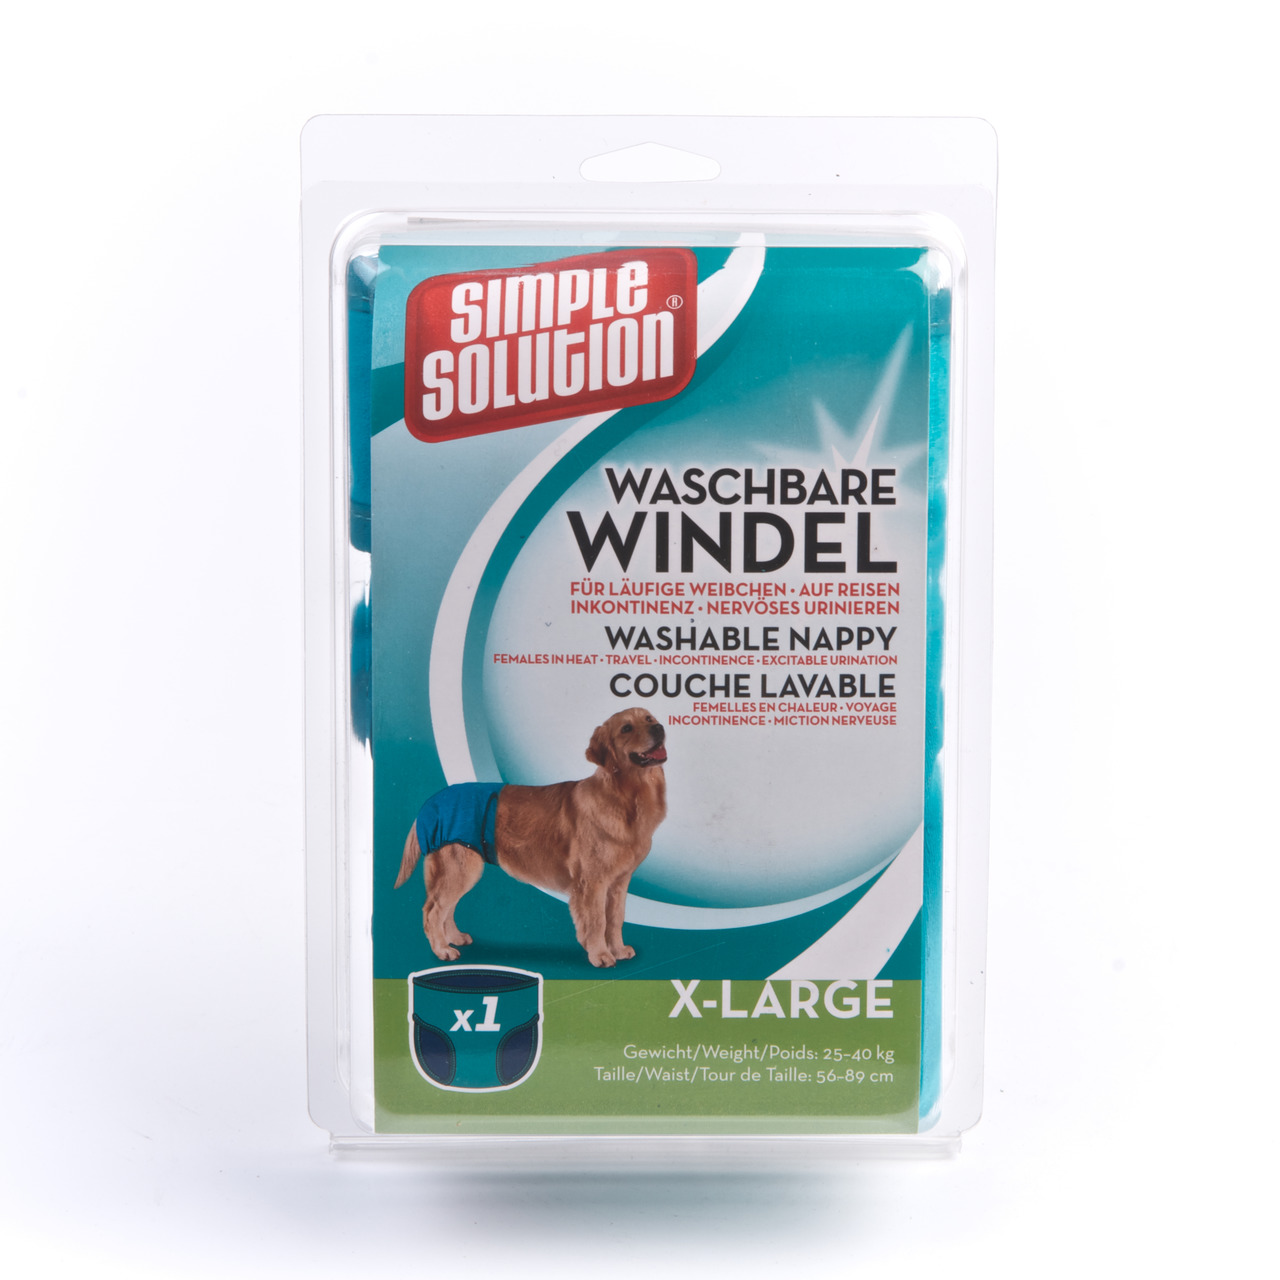 Simple Solution waschbare Windel Hunde Hygiene Inkontinenz XL